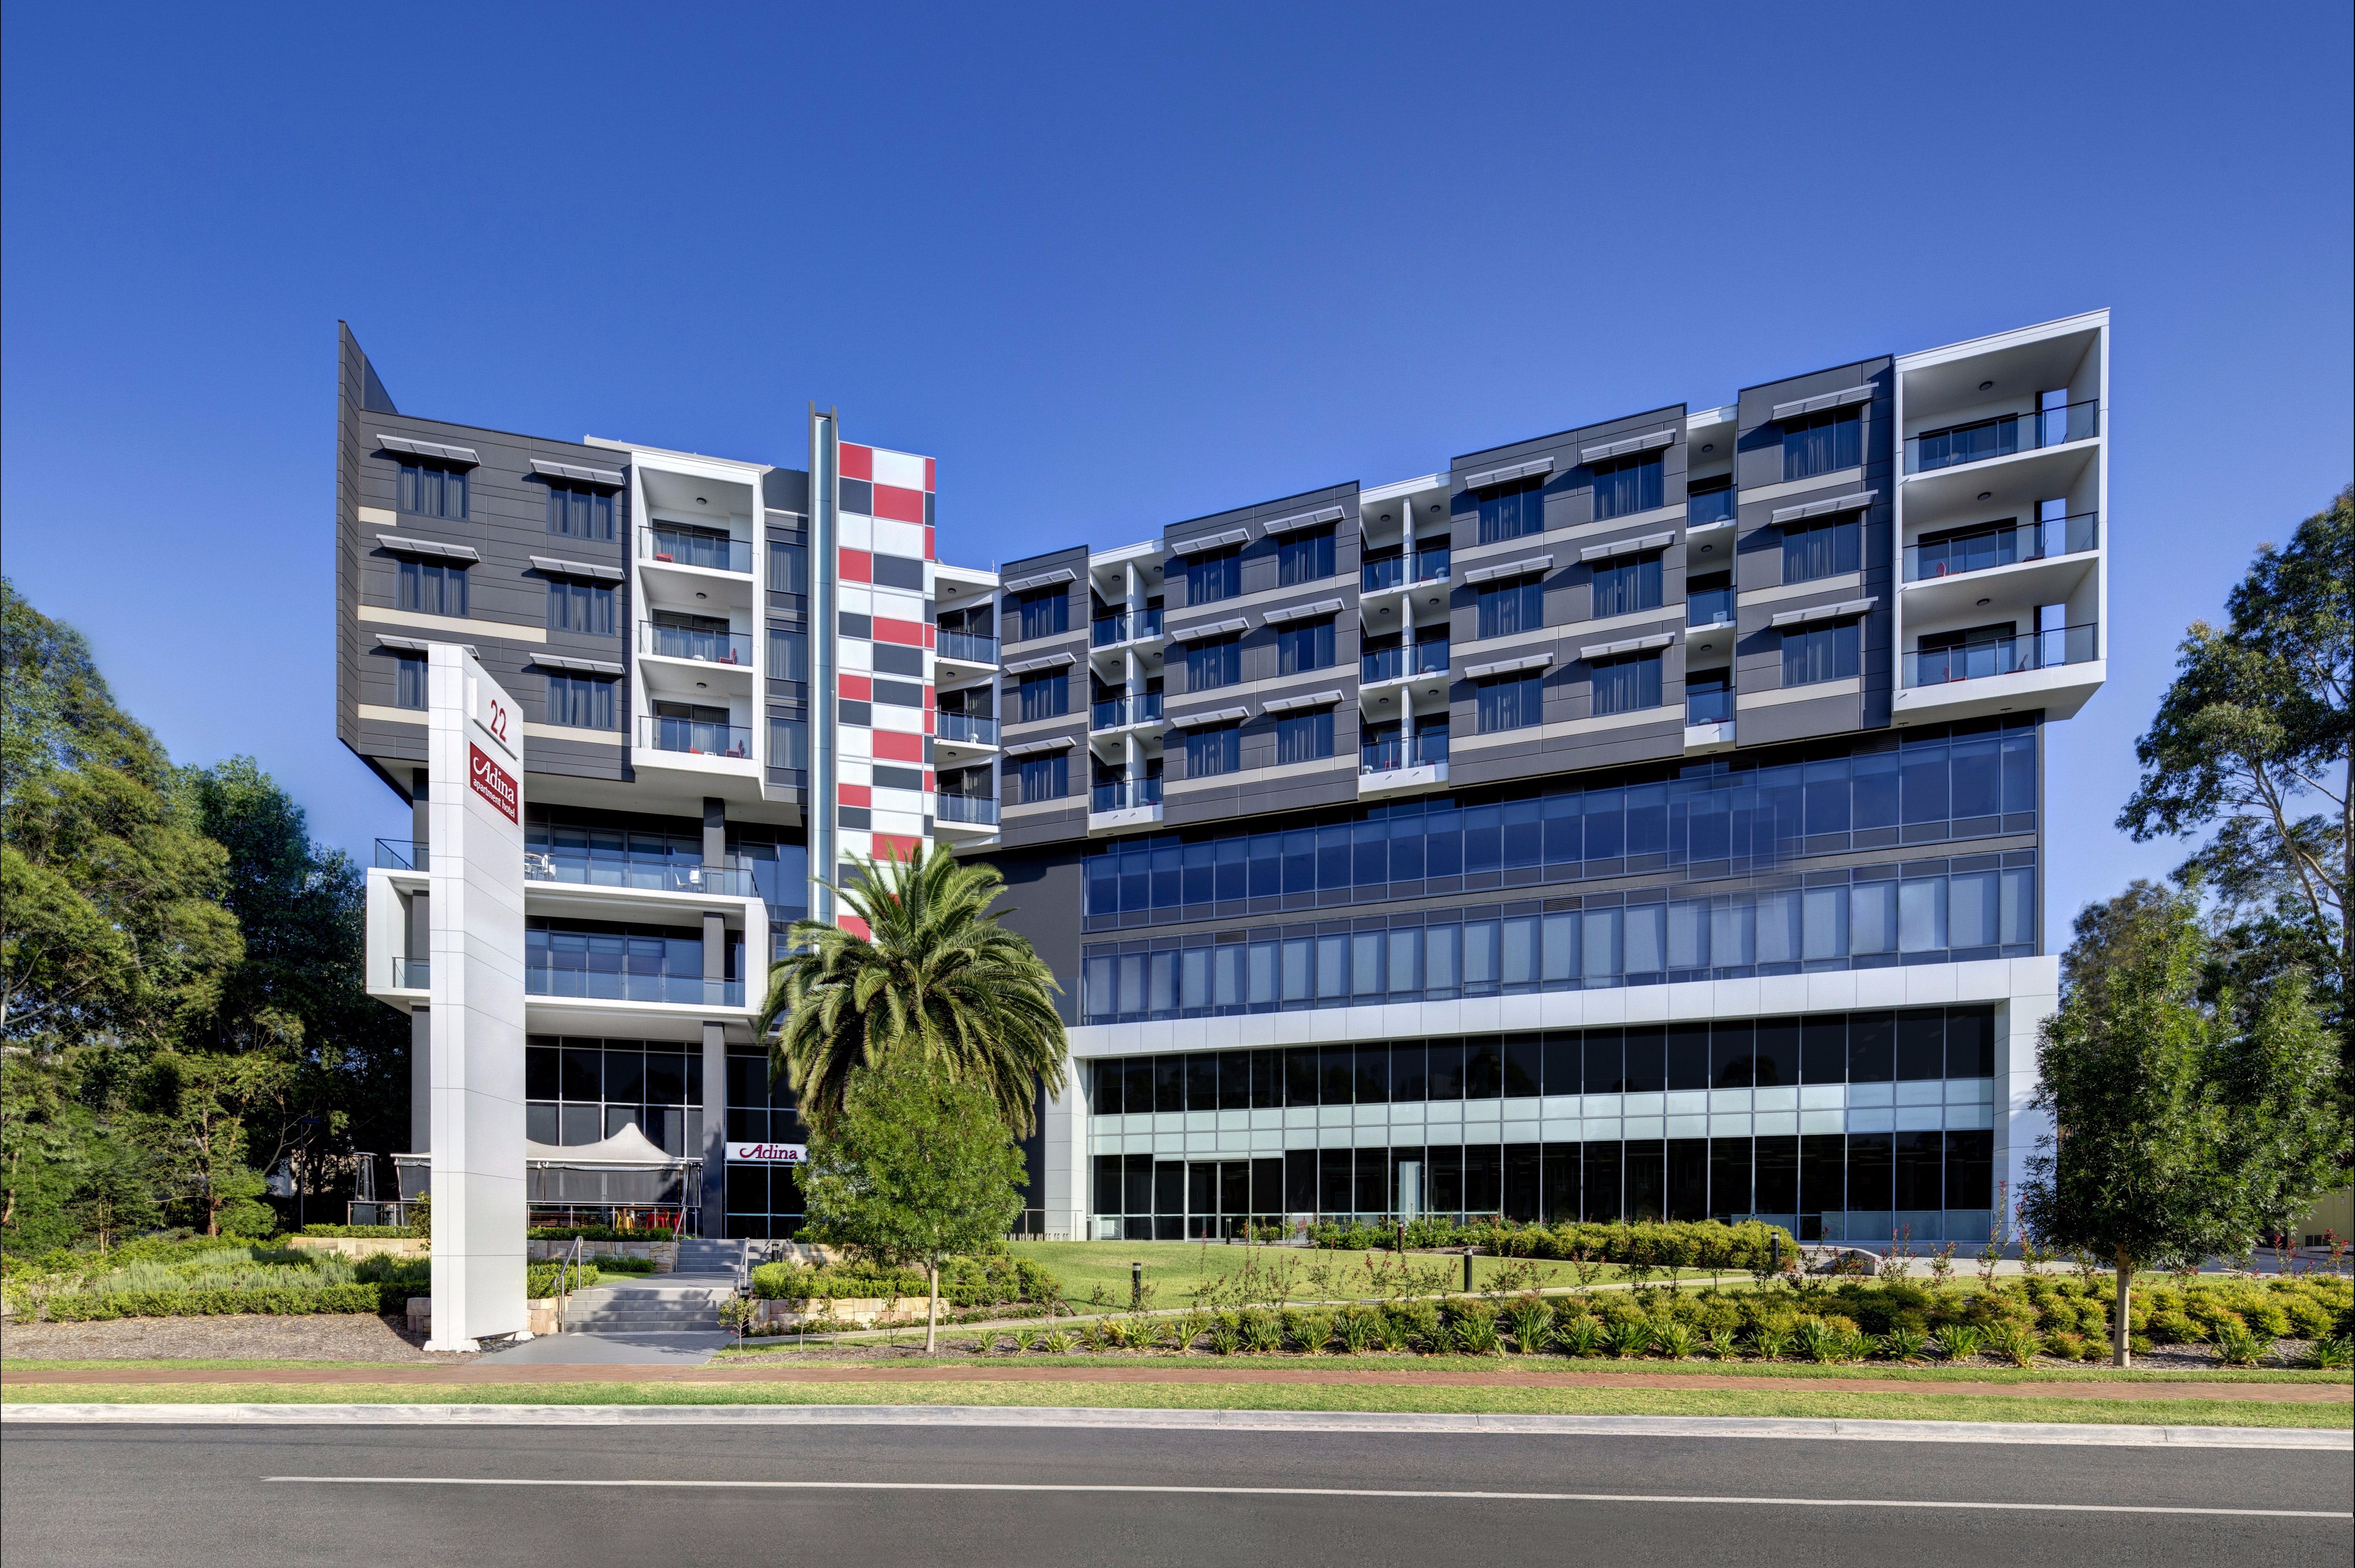 Adina Apartment Hotel Norwest Sydney - Accommodation Resorts